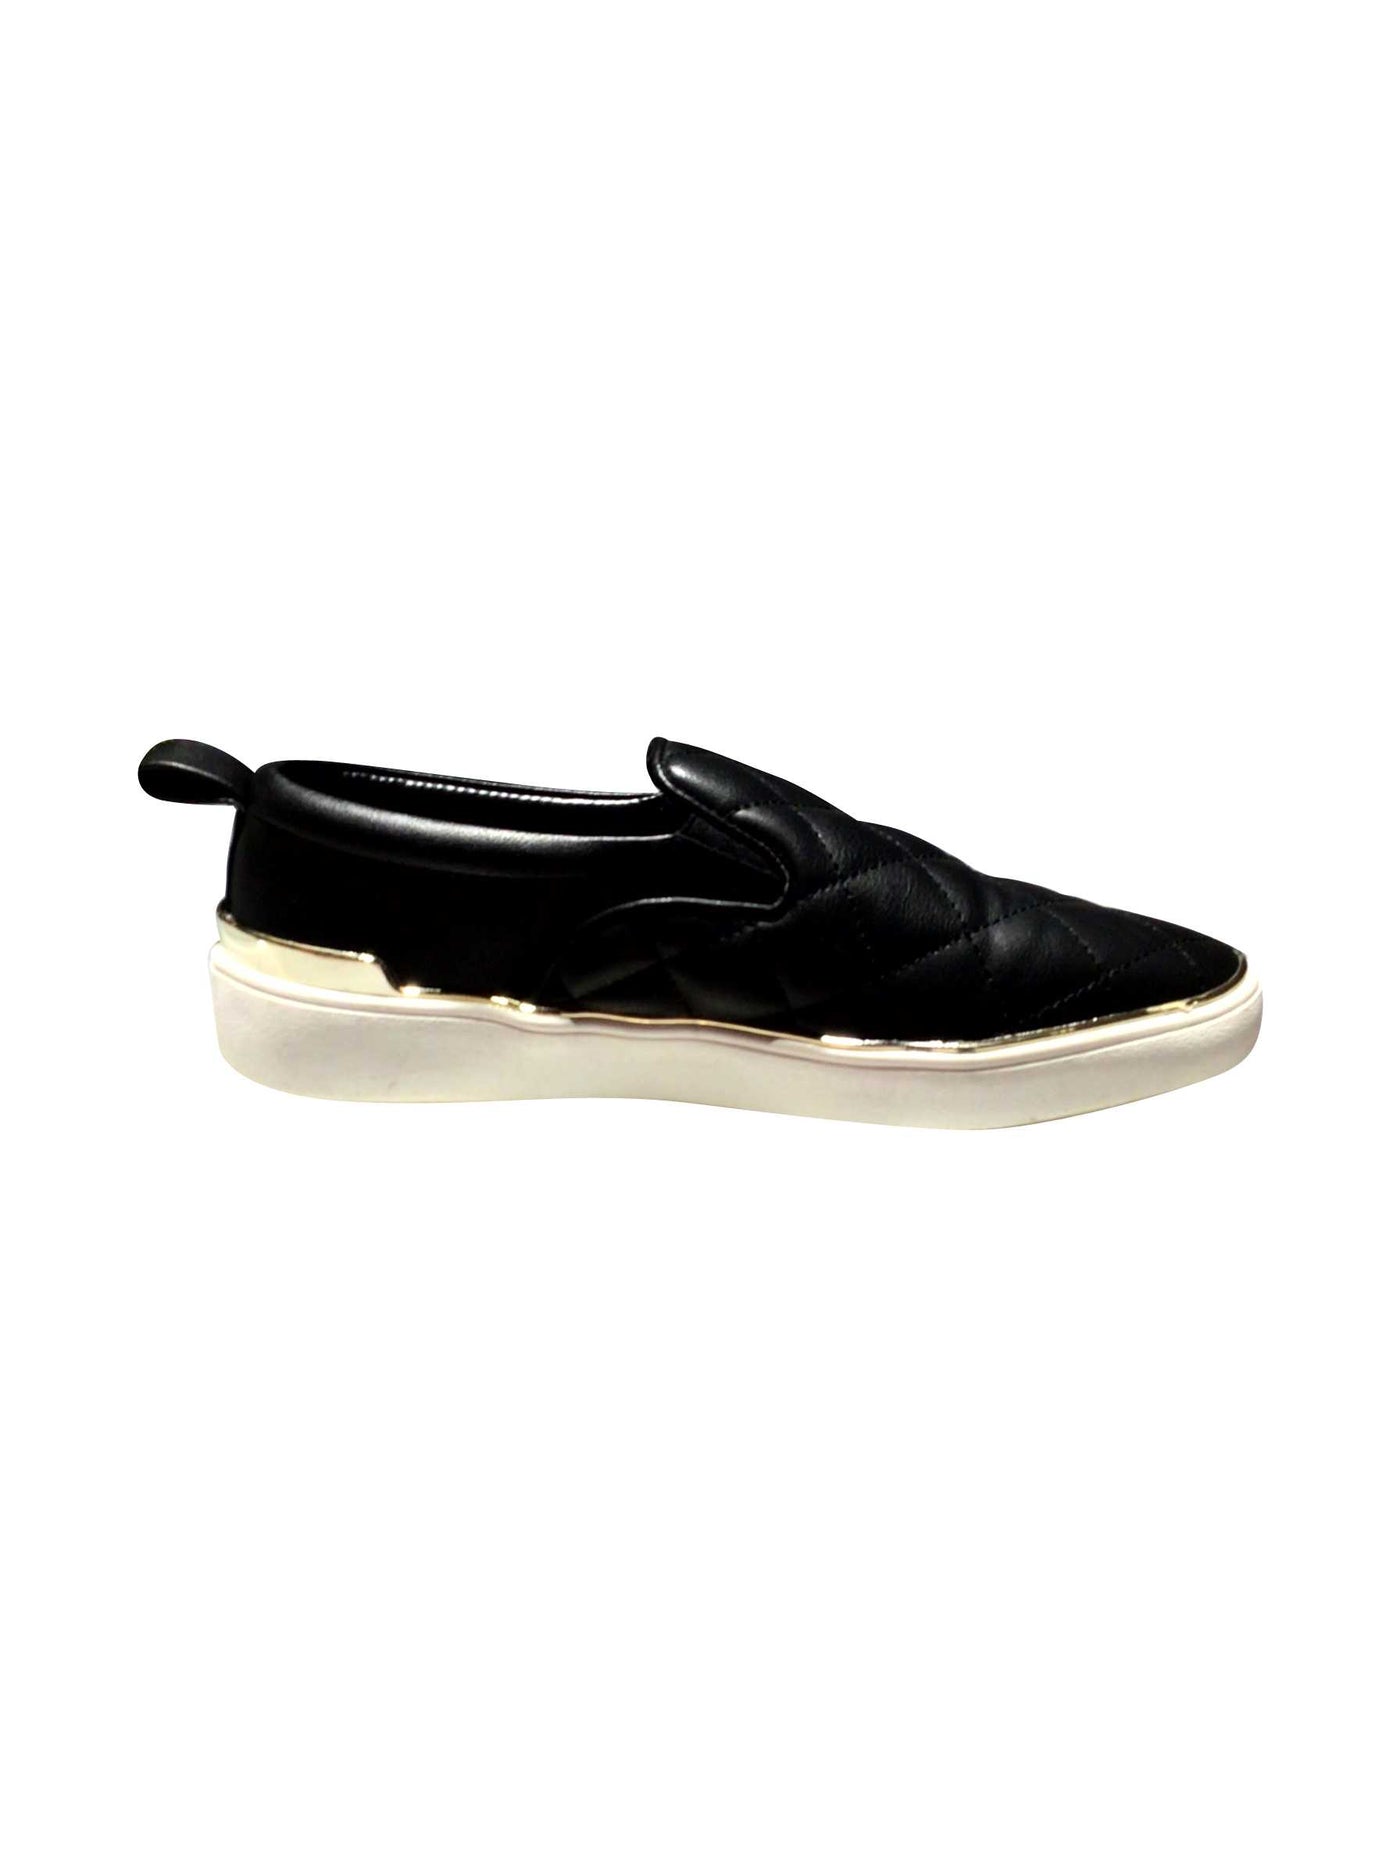 SPRING Regular fit Flats Shoes in Black - 8.5   Koop